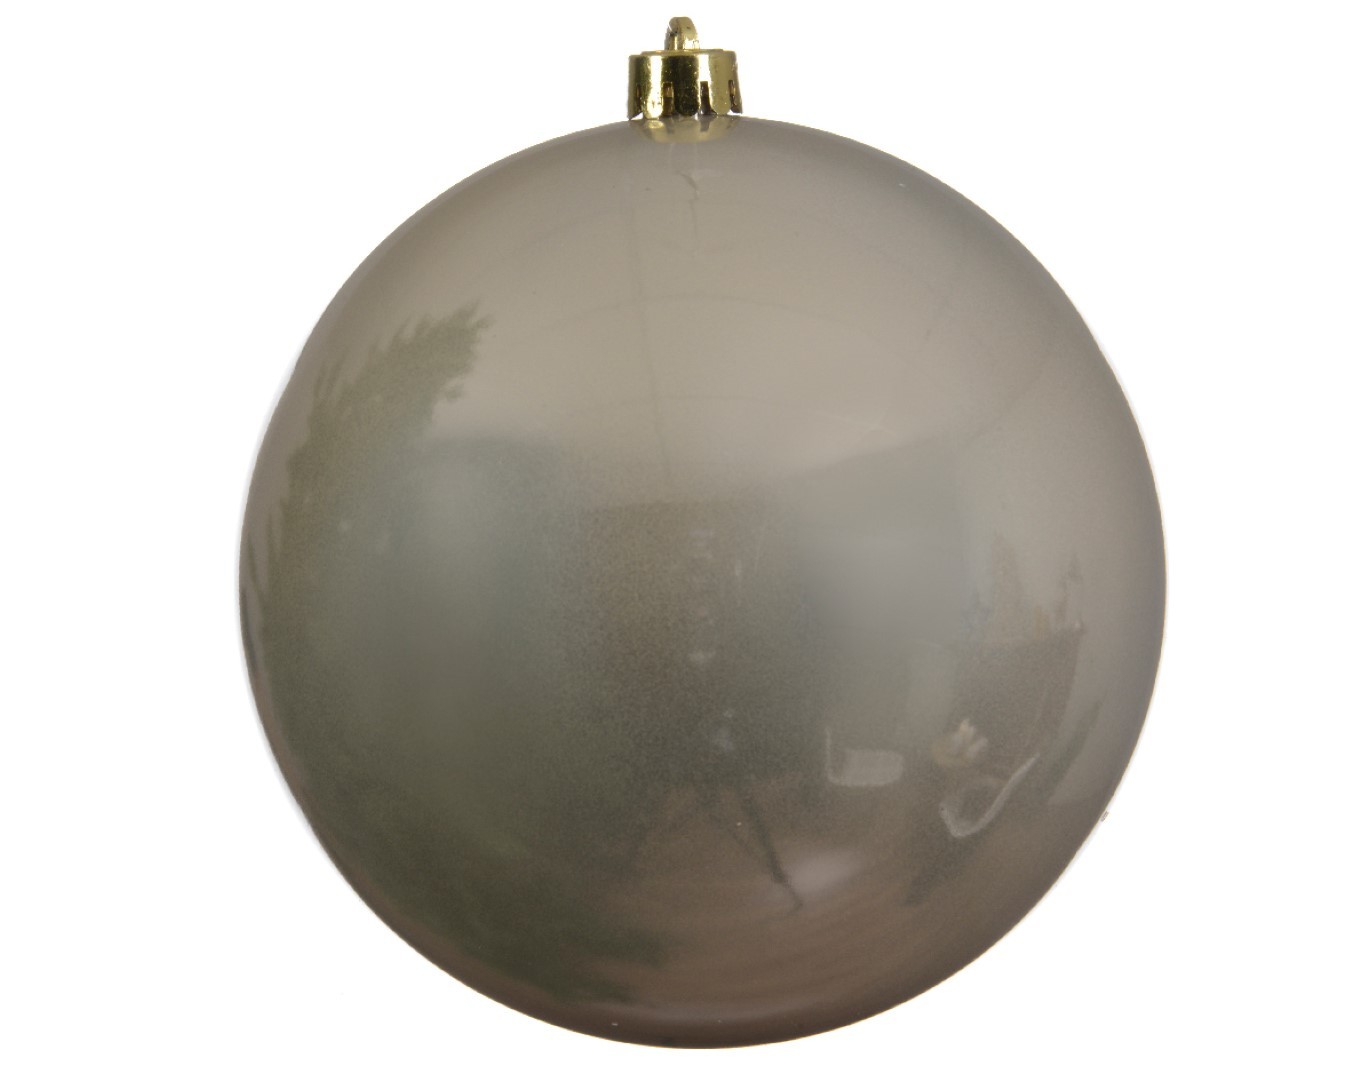 Decoris grote decoratie kerstbal - 20 cm - licht champagne - kunststof - kerstversiering